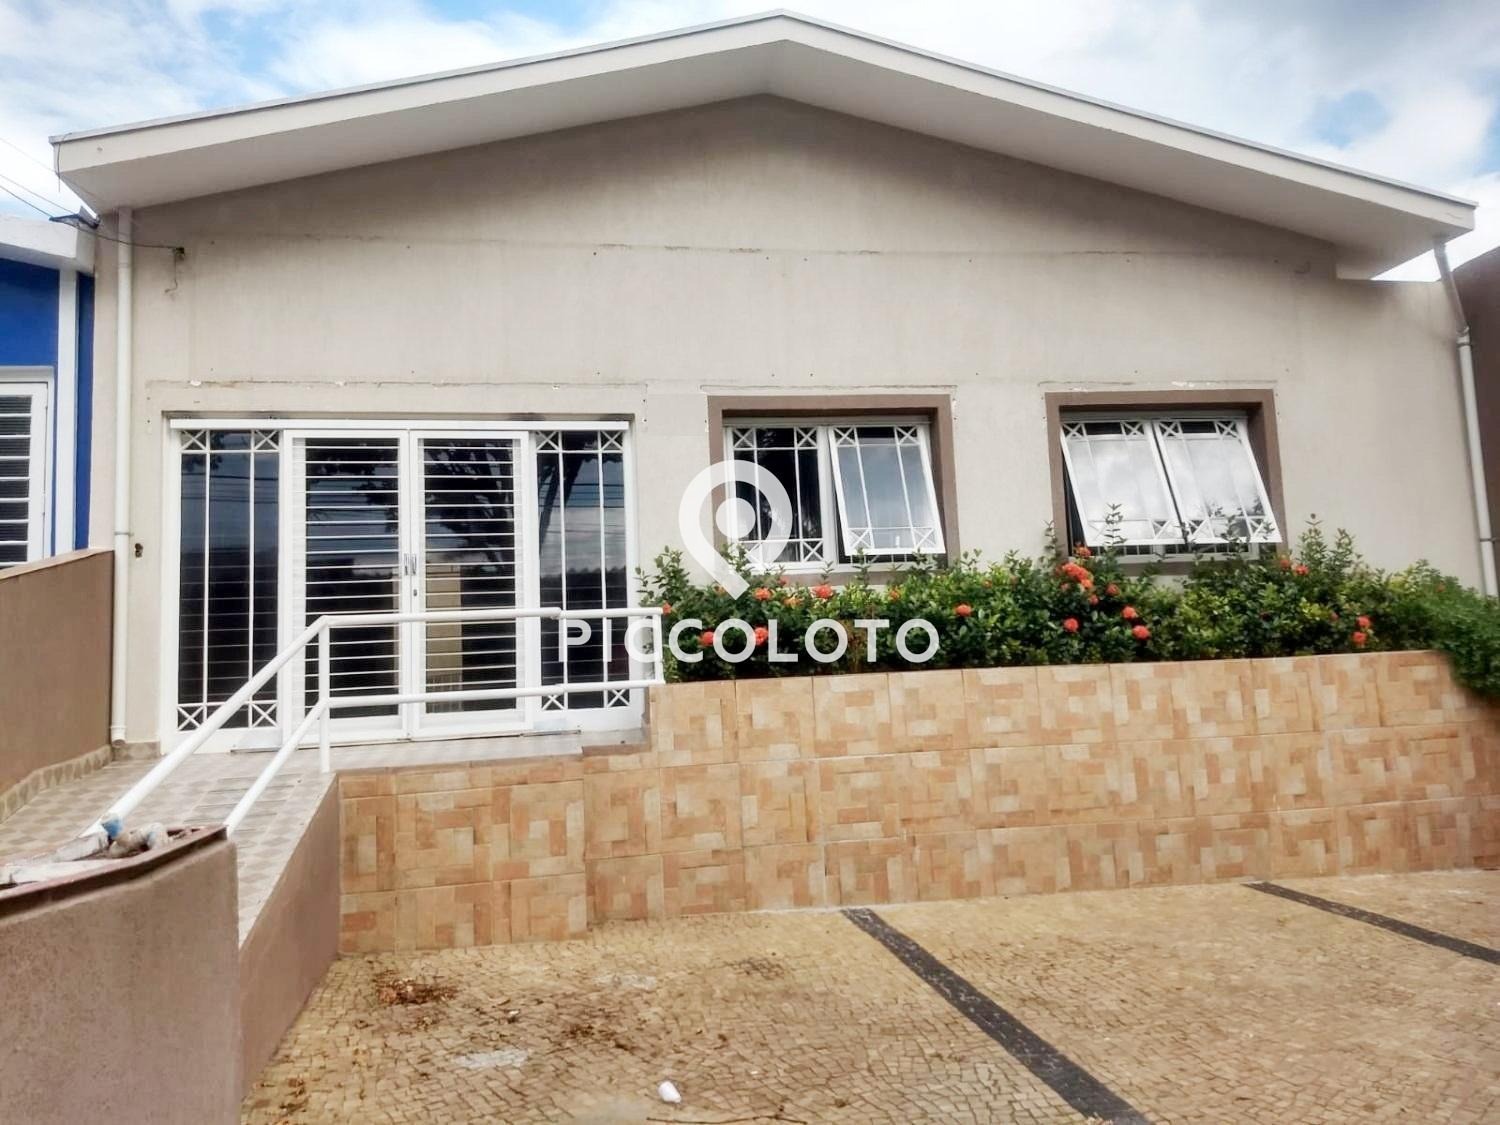 Piccoloto - Casa à venda no Jardim Leonor em Campinas